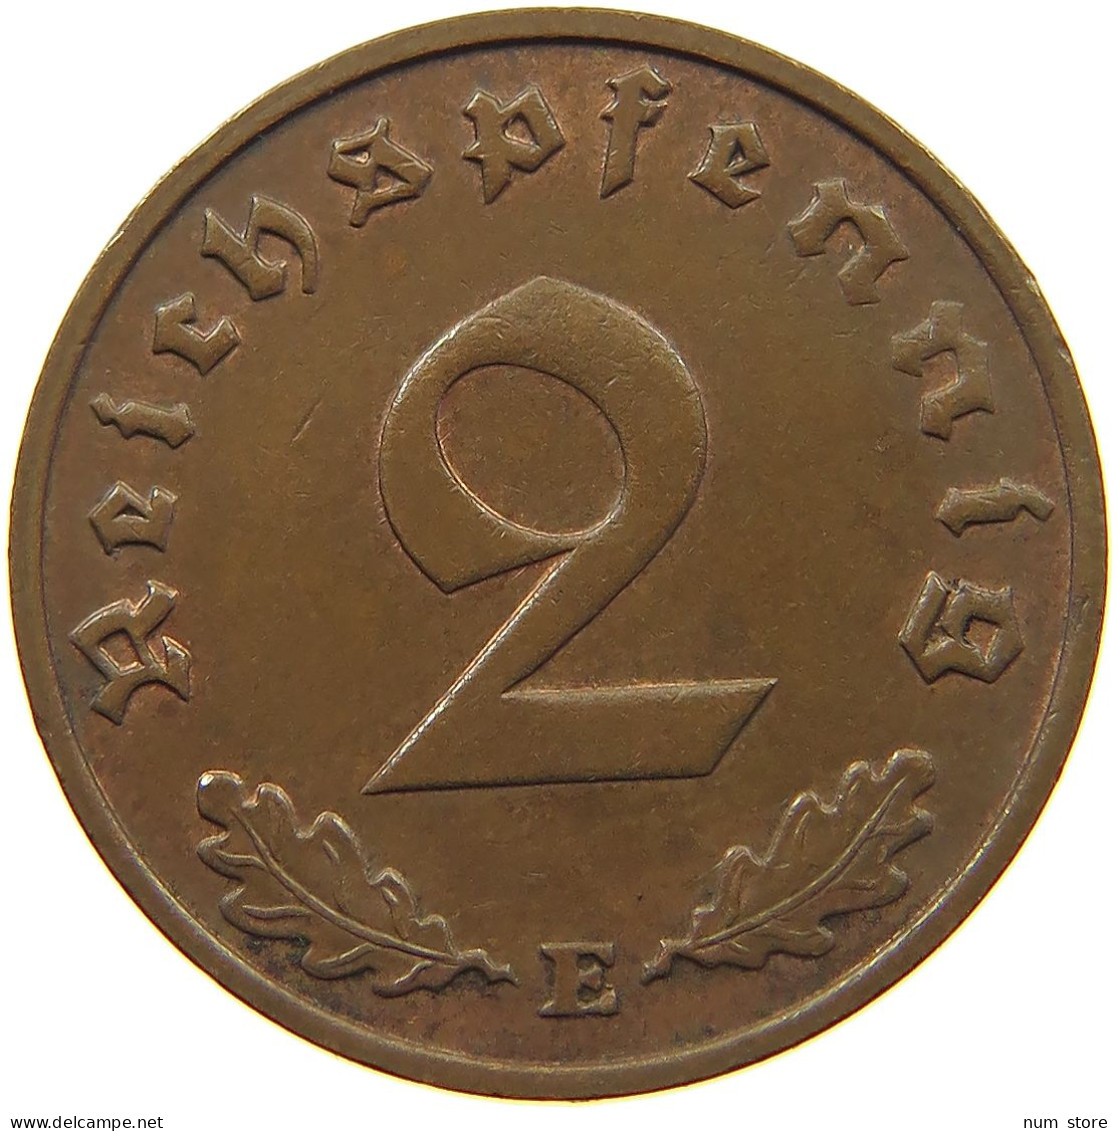 GERMANY 2 PFENNIG 1938 E #c083 0149 - 2 Reichspfennig